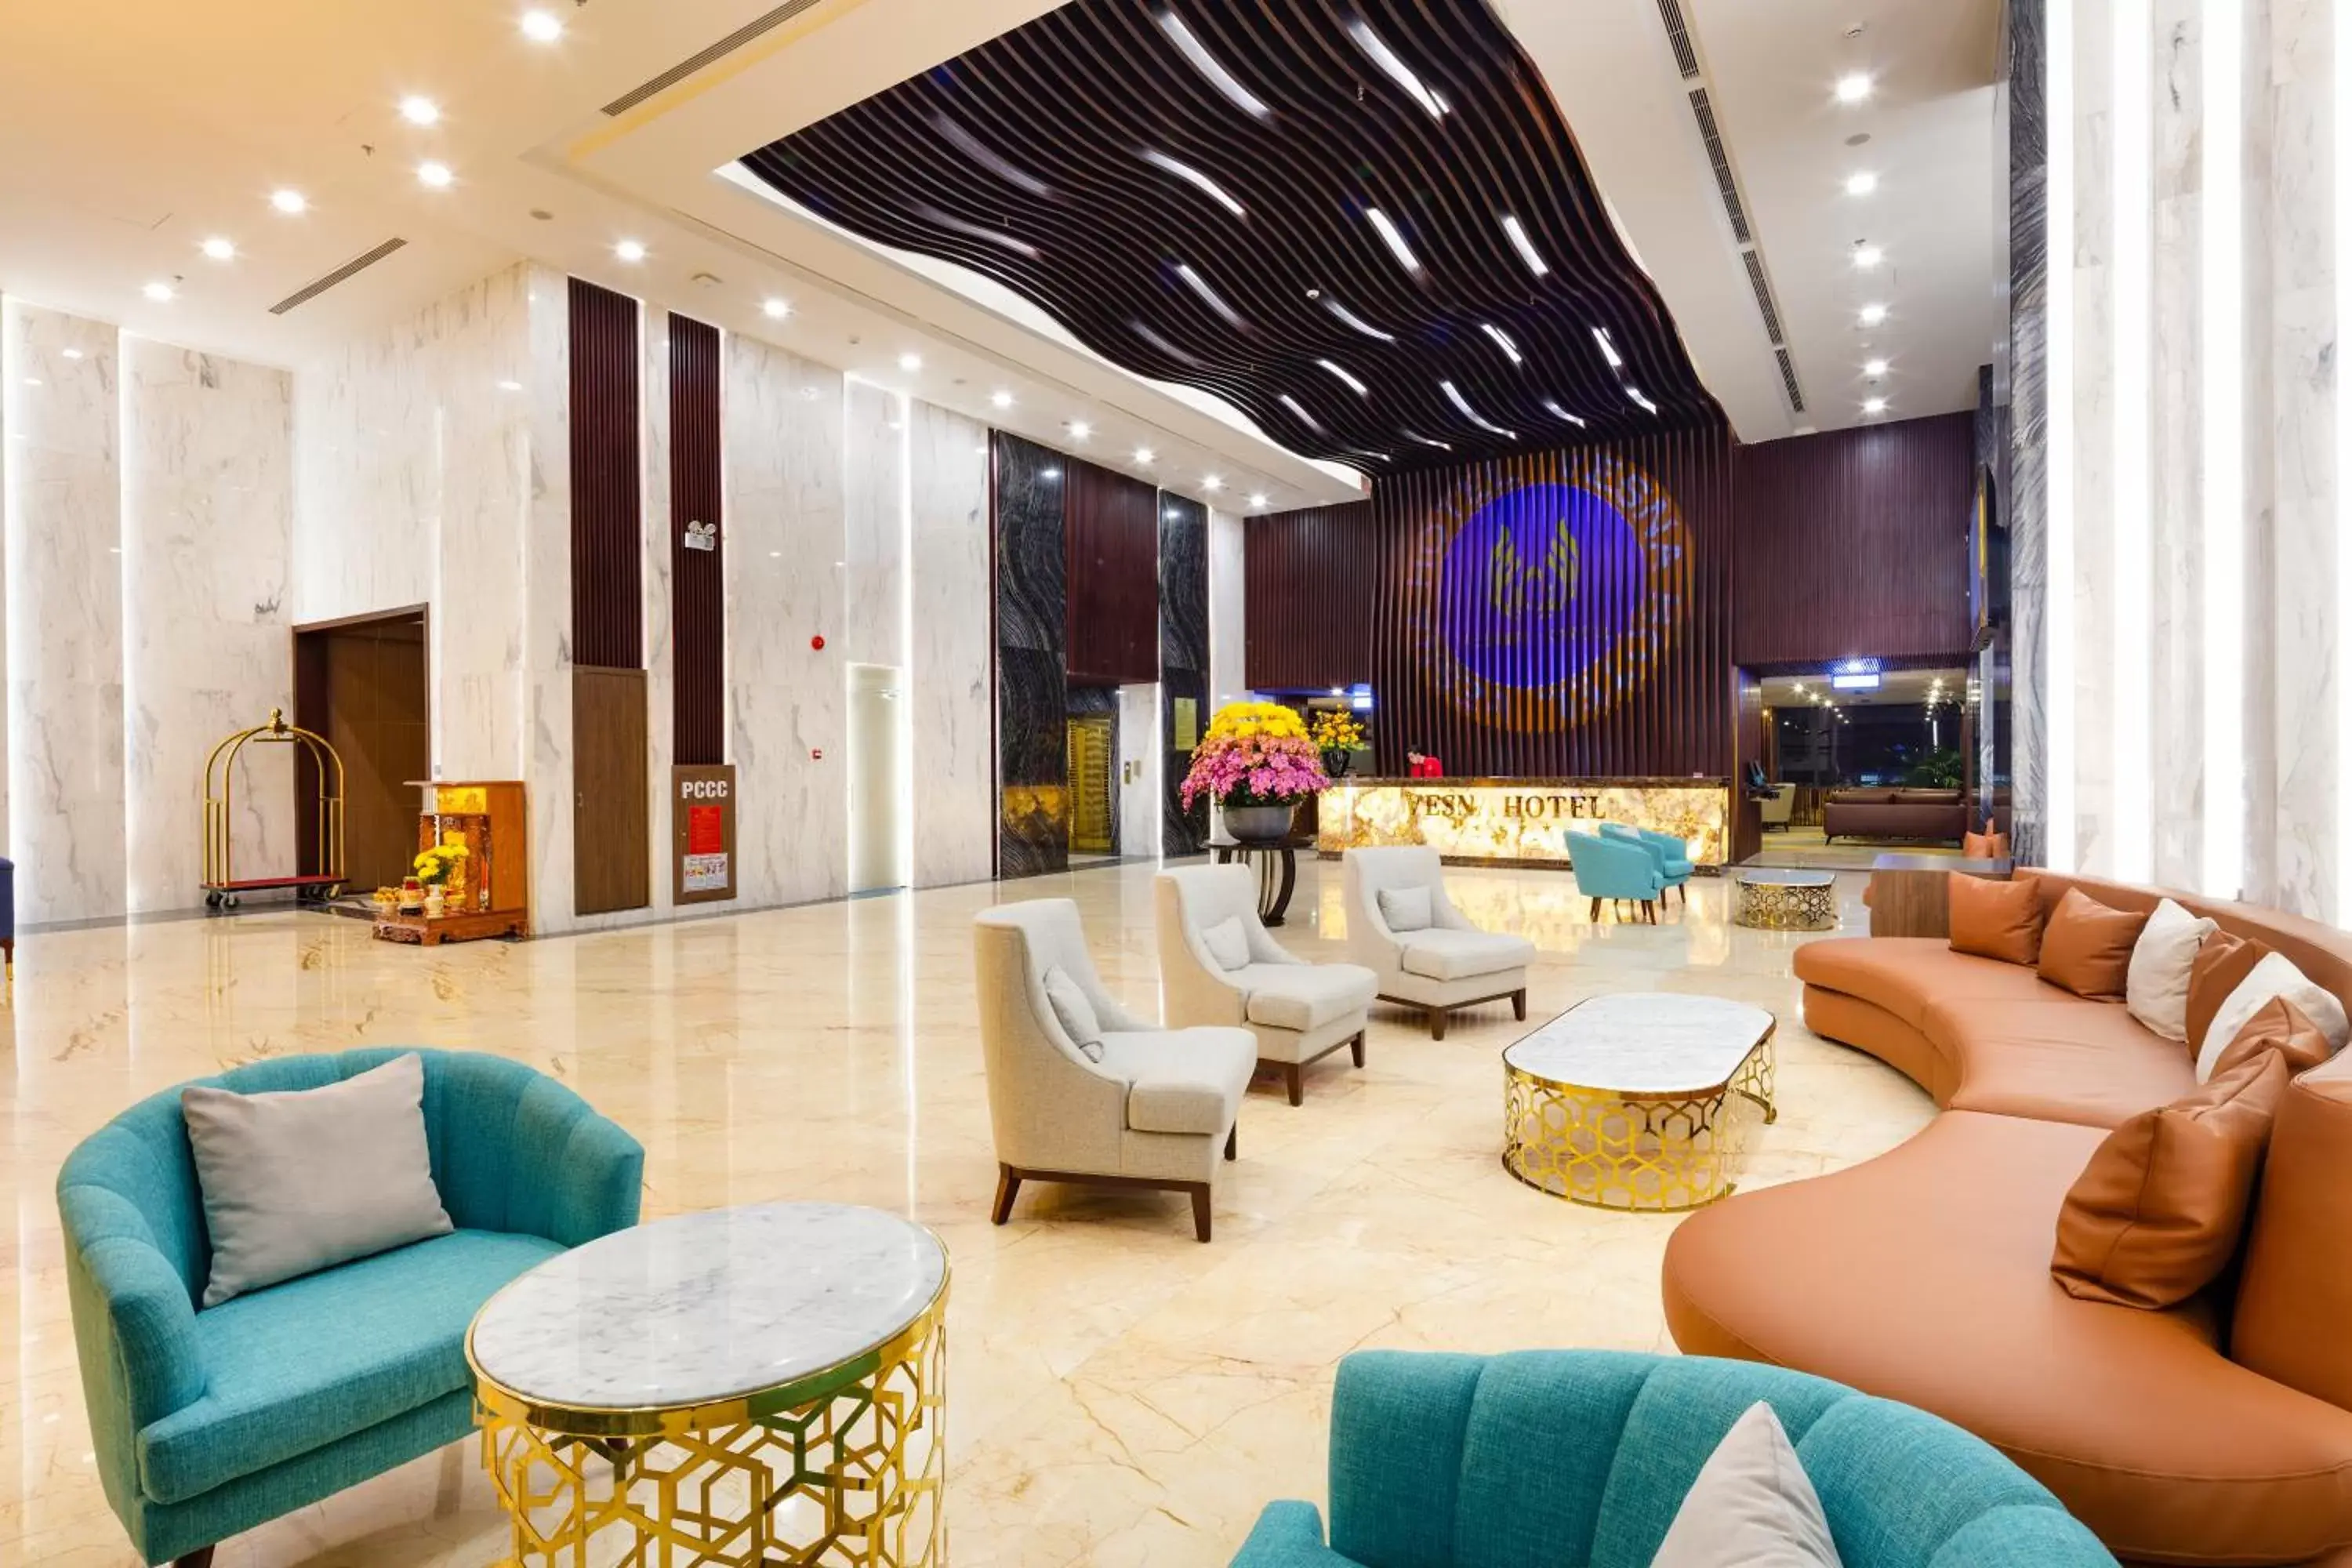 Lobby or reception, Lobby/Reception in Vesna Hotel